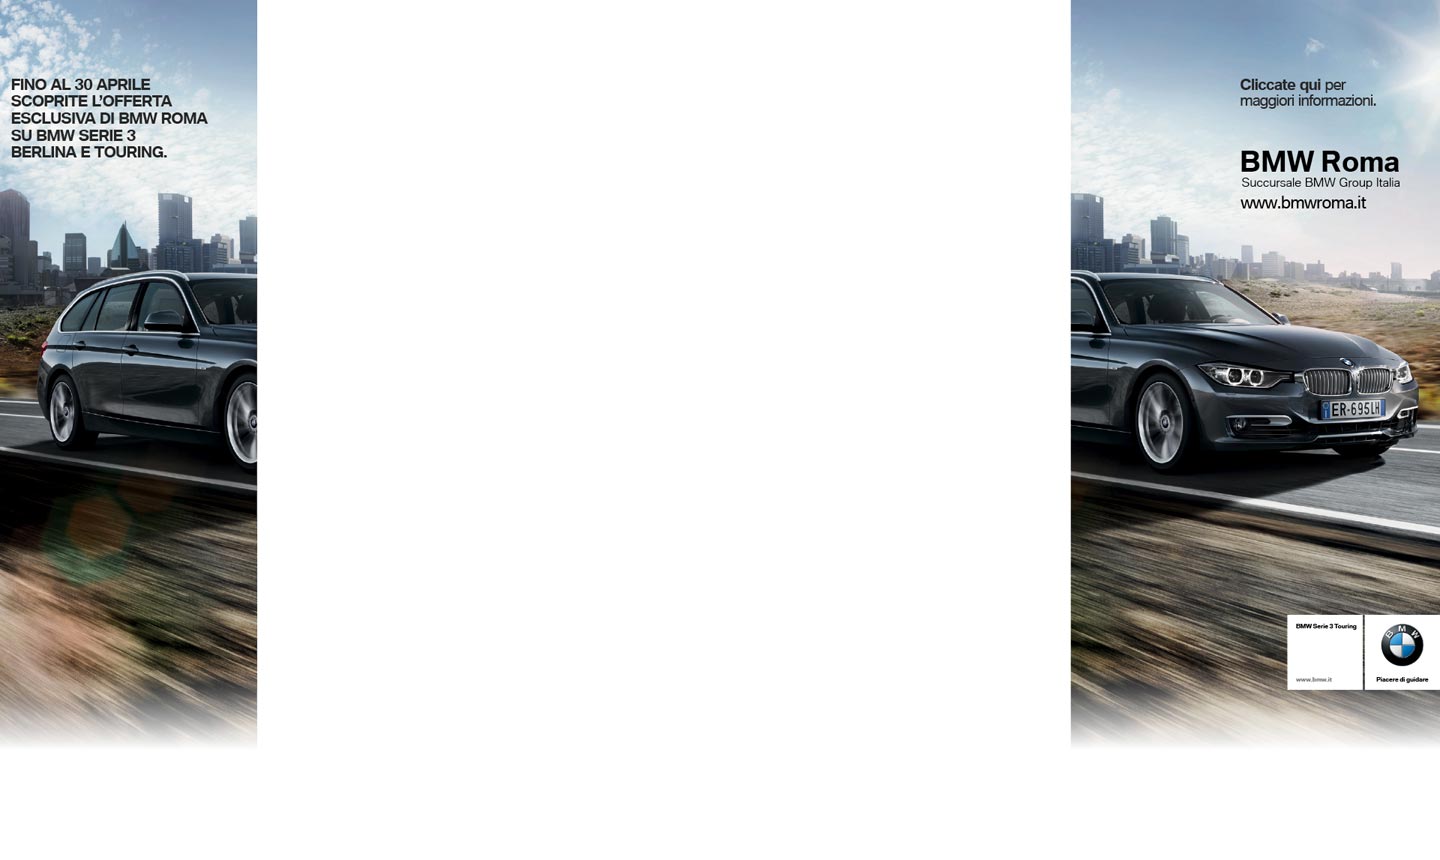 BMW Roma Capmagna 2014 01 - 1440x860 Pixels